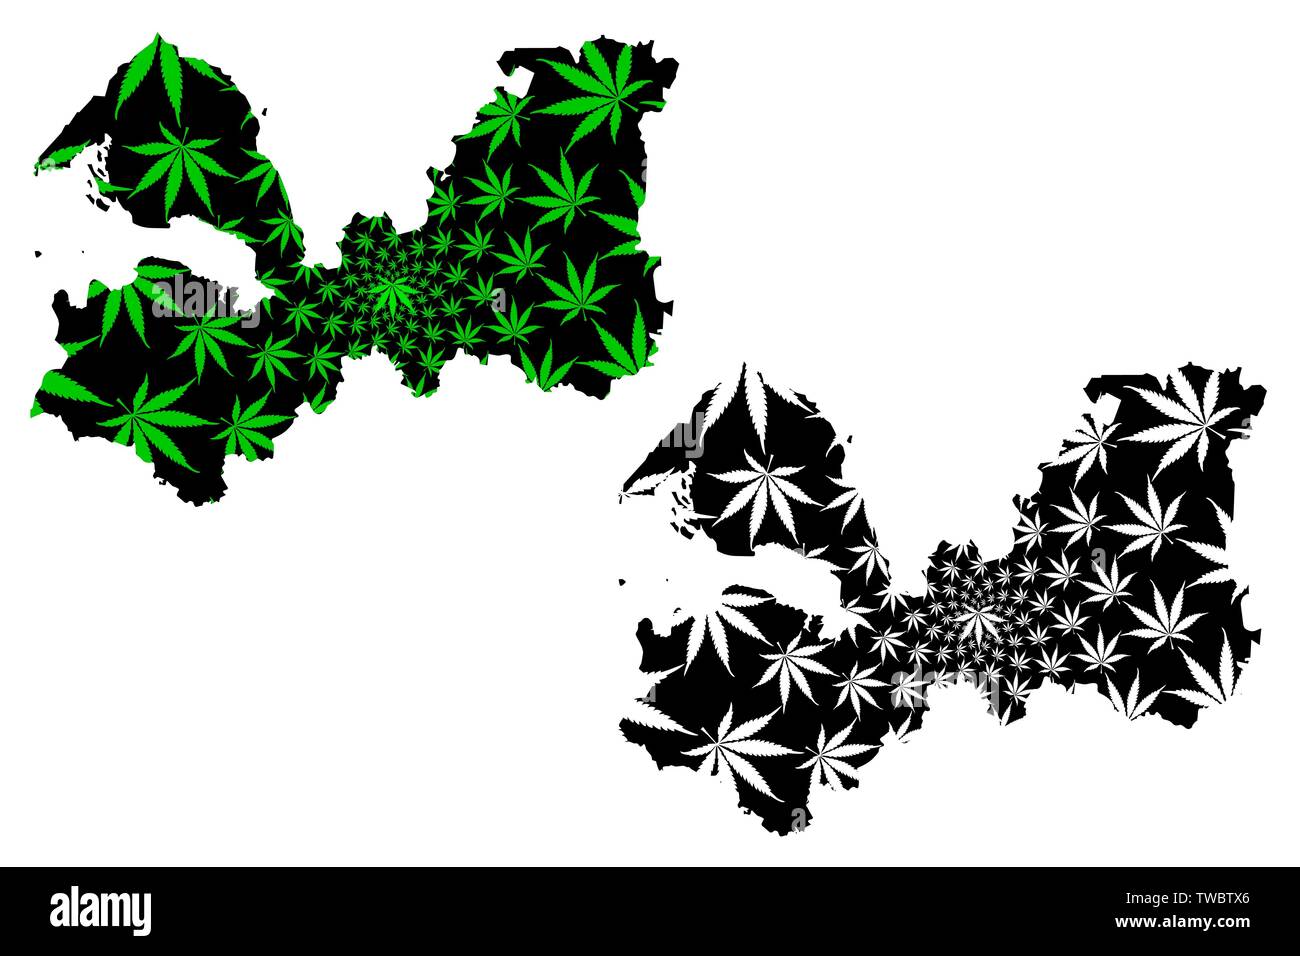 L'Oblast de Léningrad (Russie, Sujets de la Fédération de Russie, les oblasts de Russie) la carte est conçue de feuilles de cannabis vert et noir, Oblast de Léningrad carte m Illustration de Vecteur